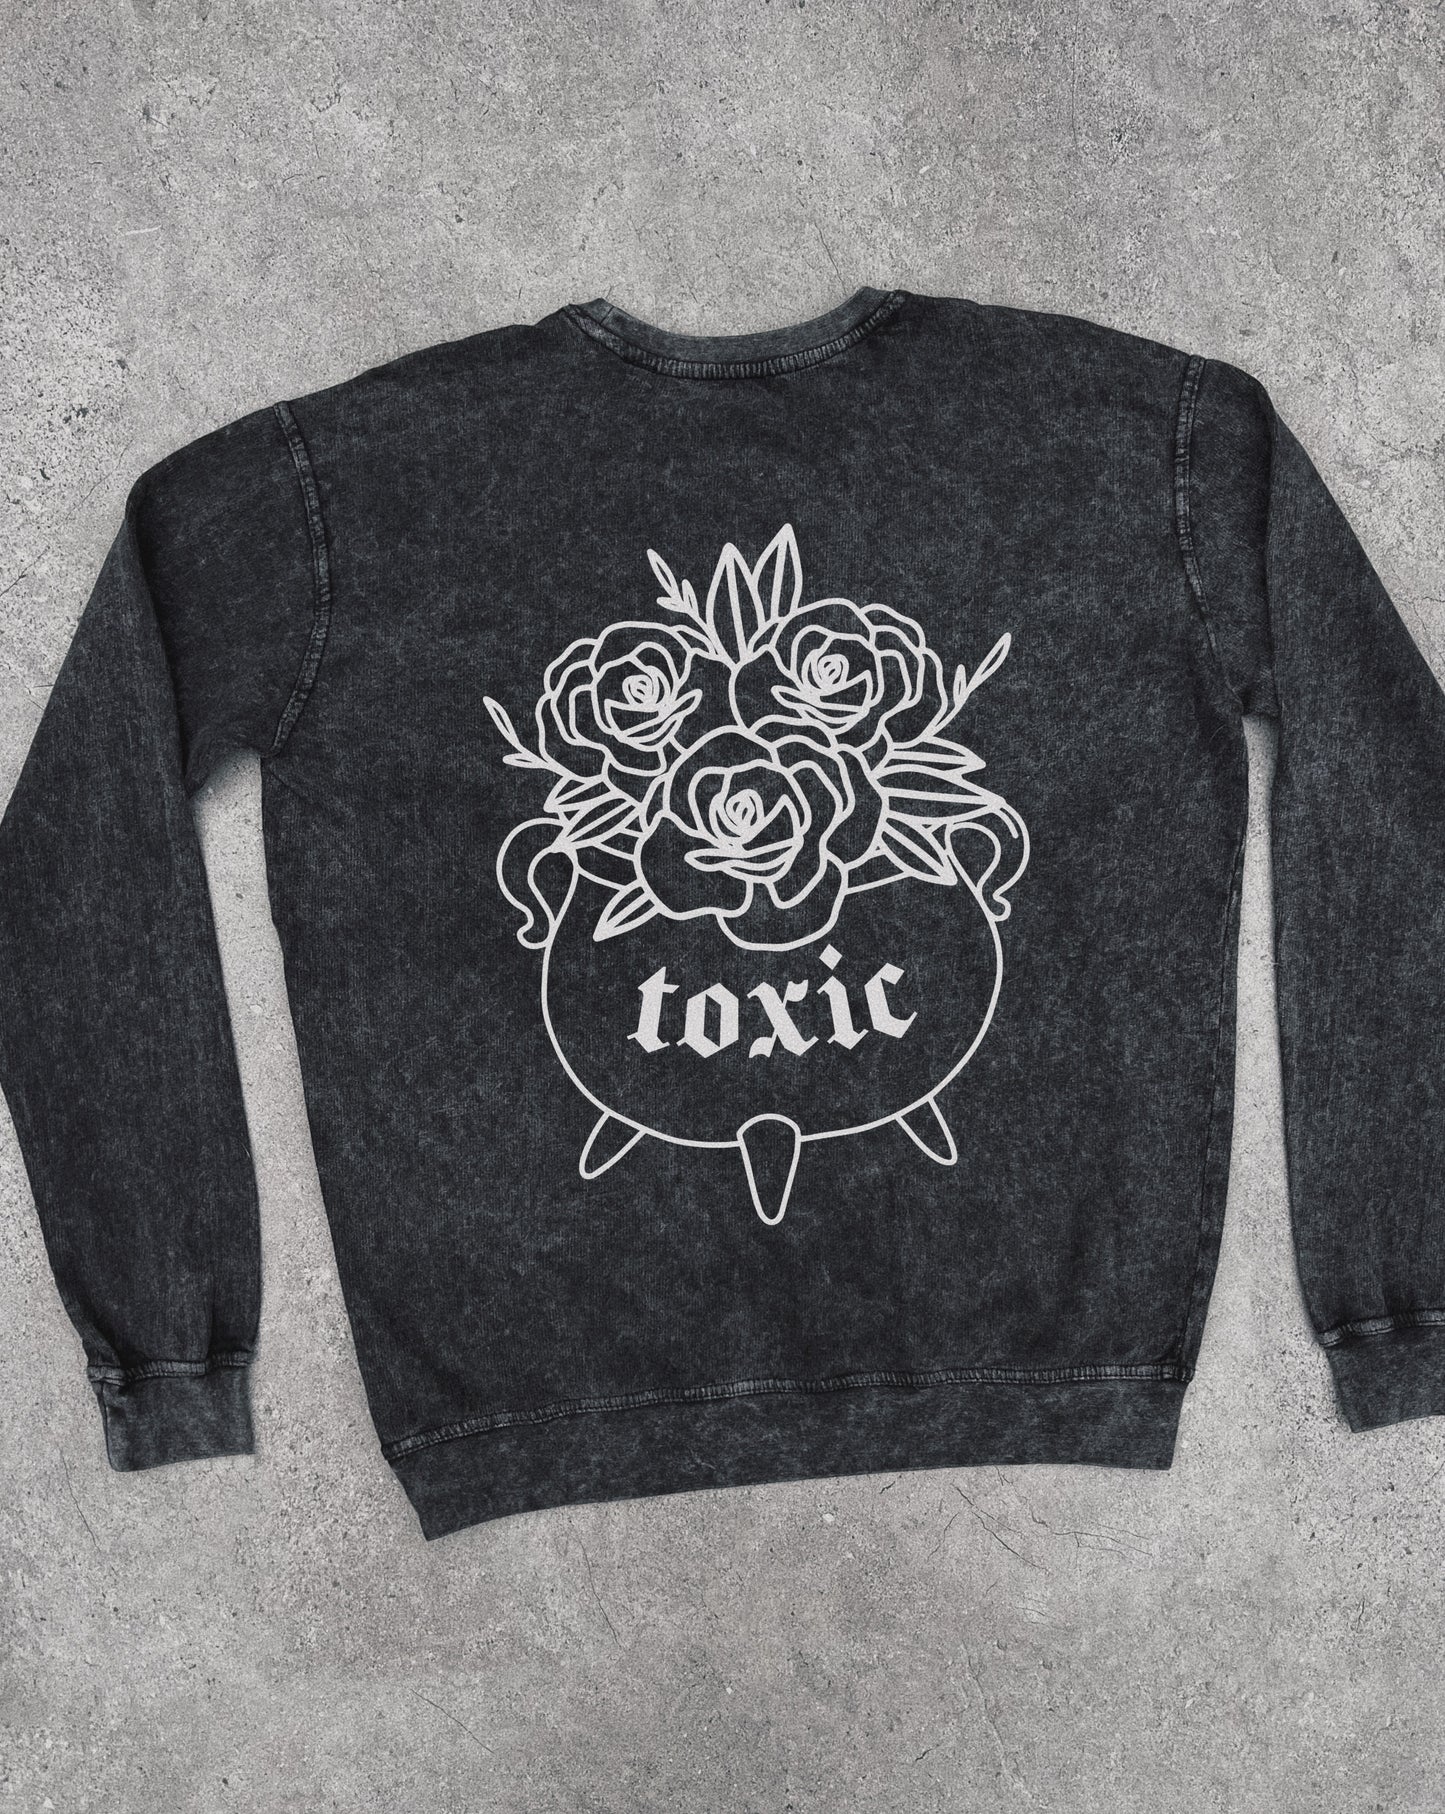 Toxic - Sweatshirt